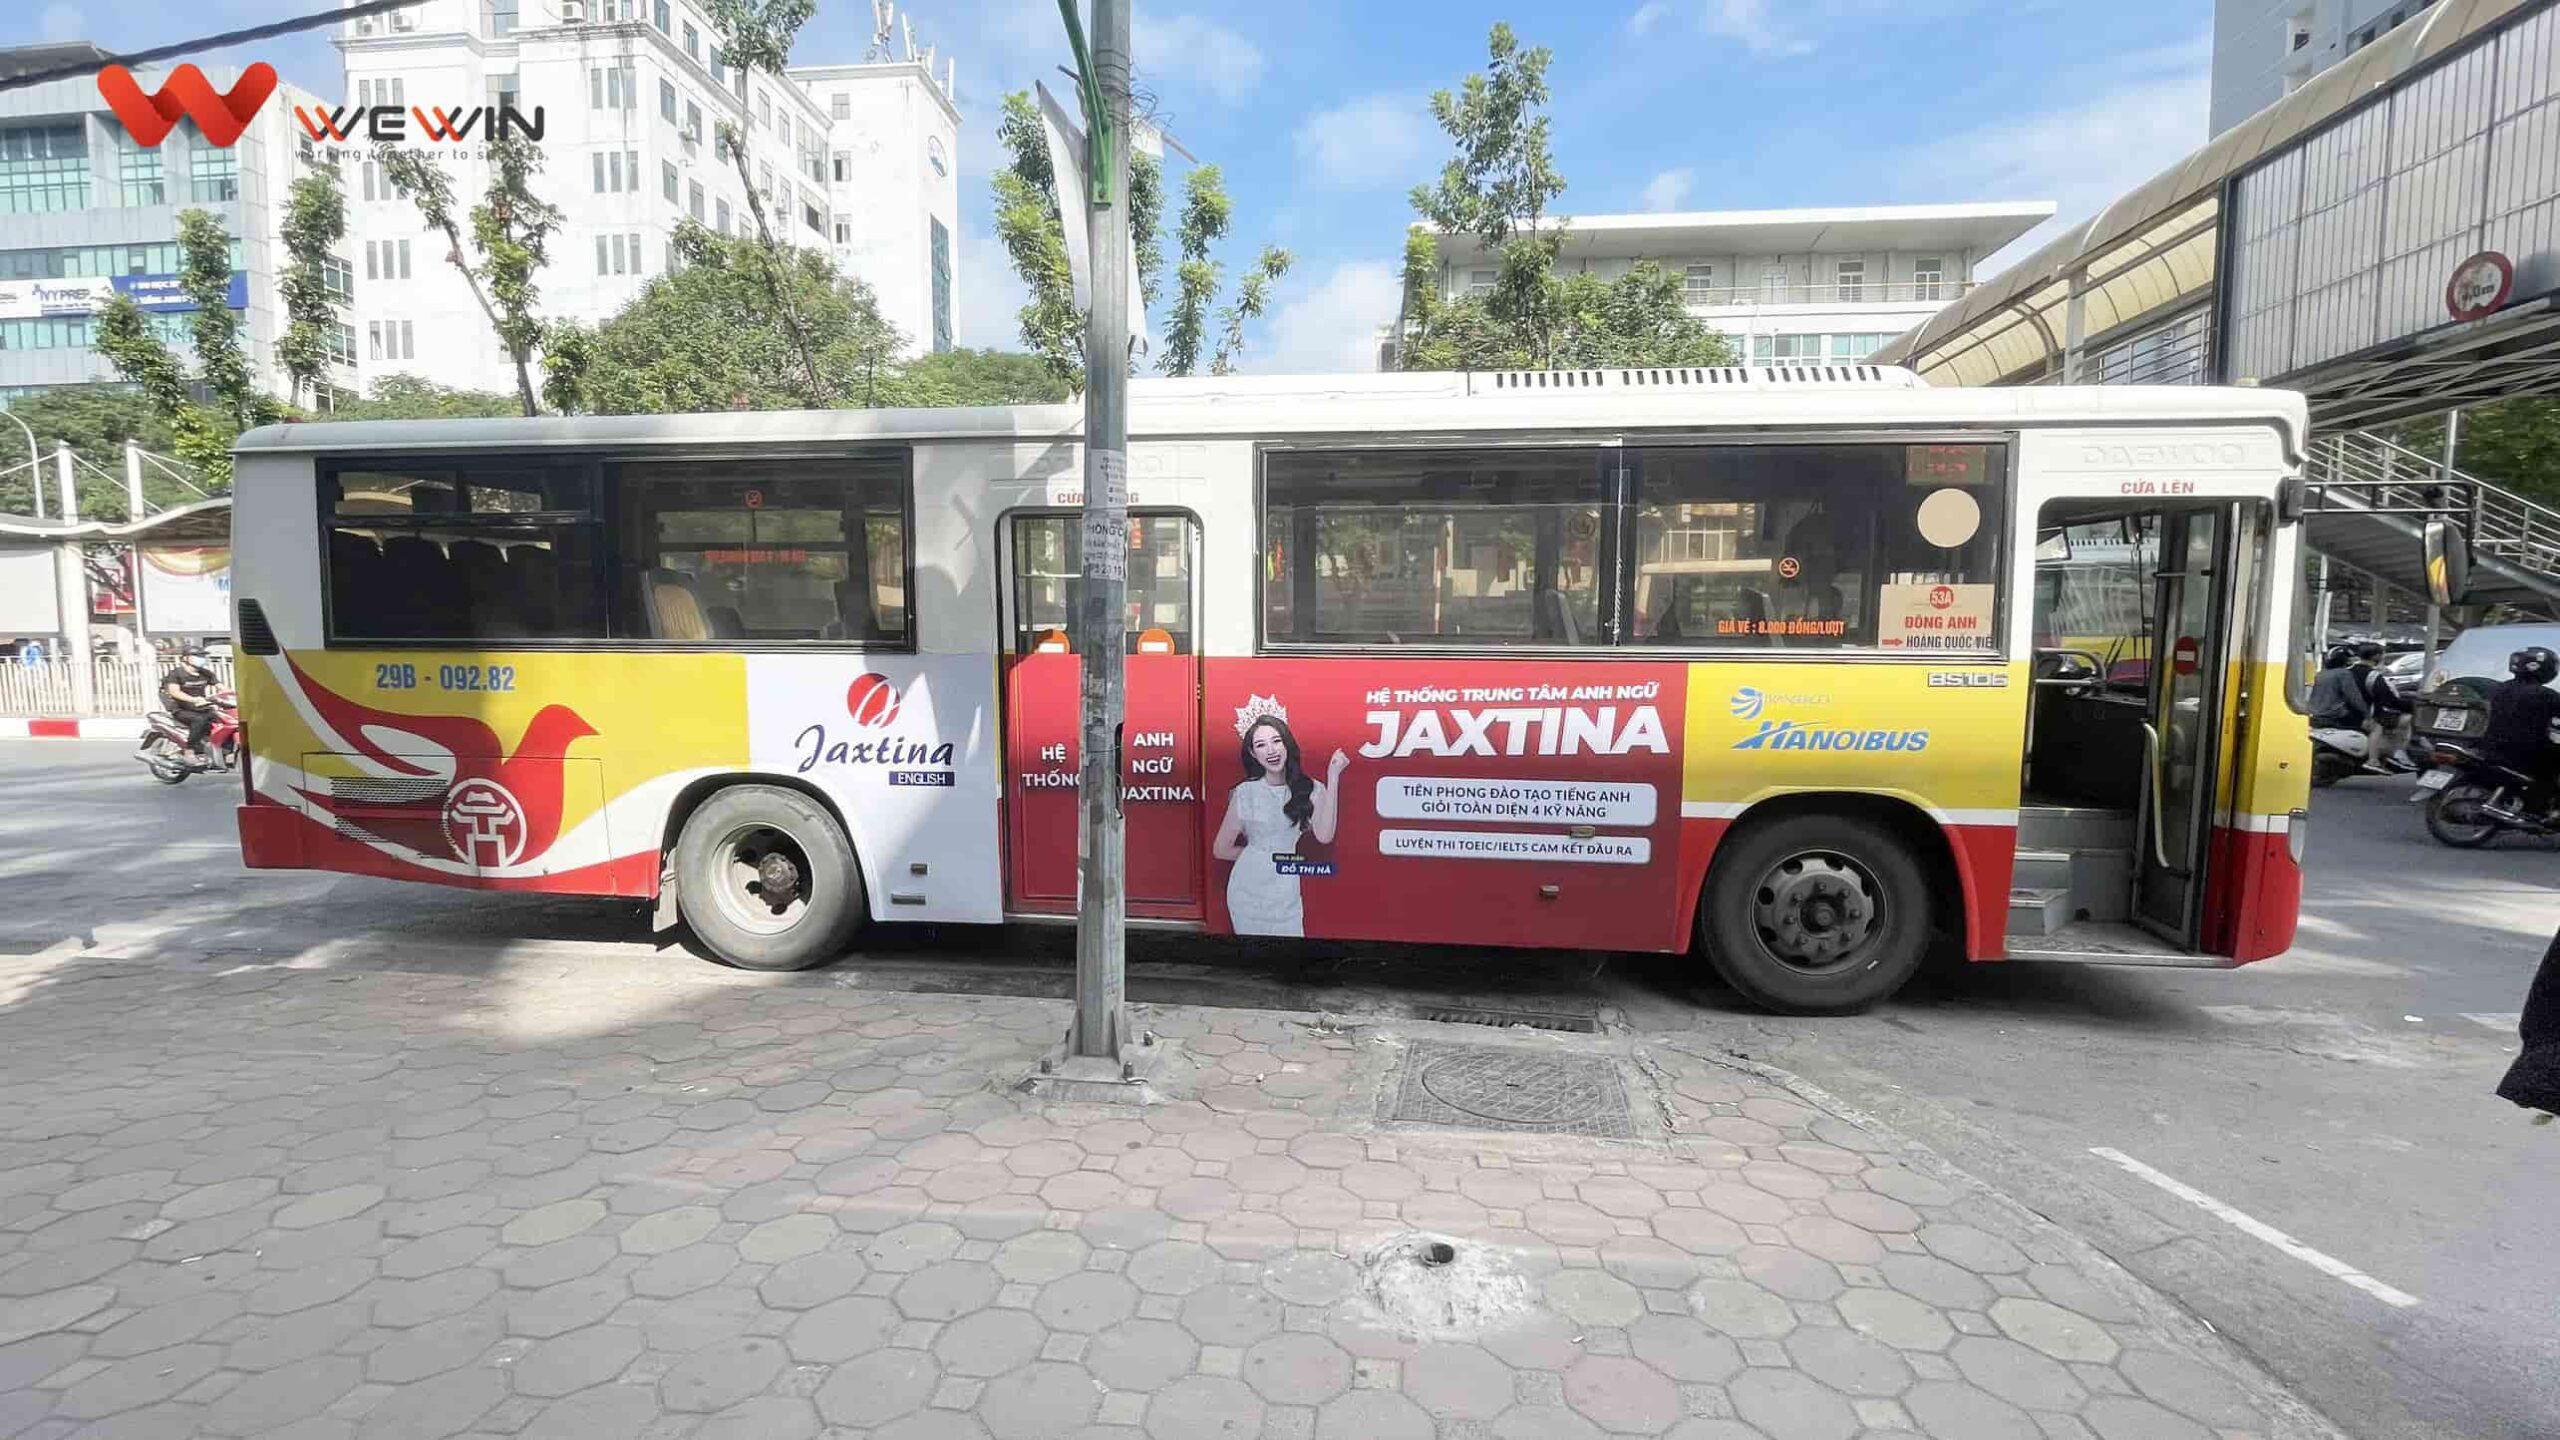 quang cao xe bus jaxtina (4)